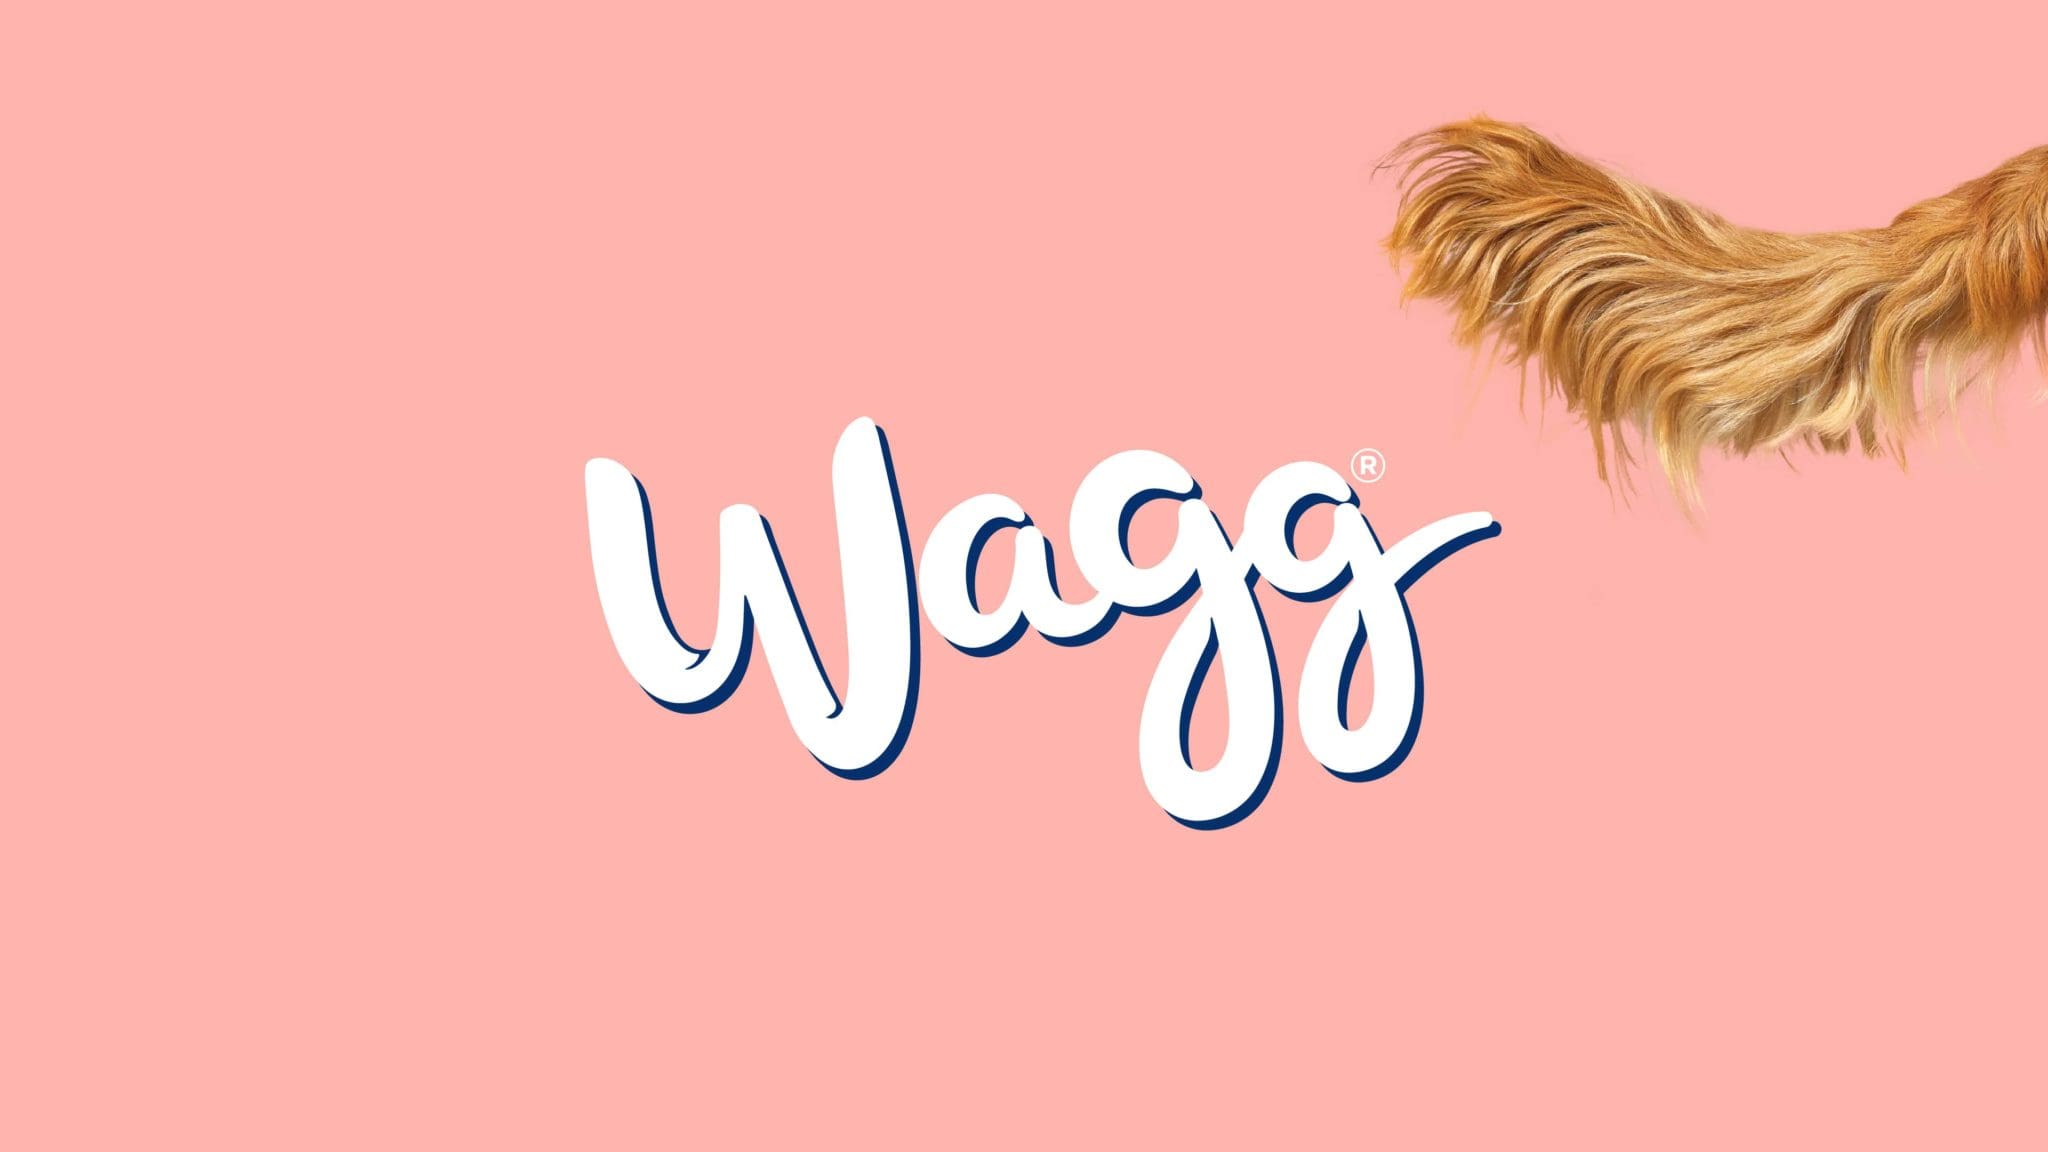 Wagg